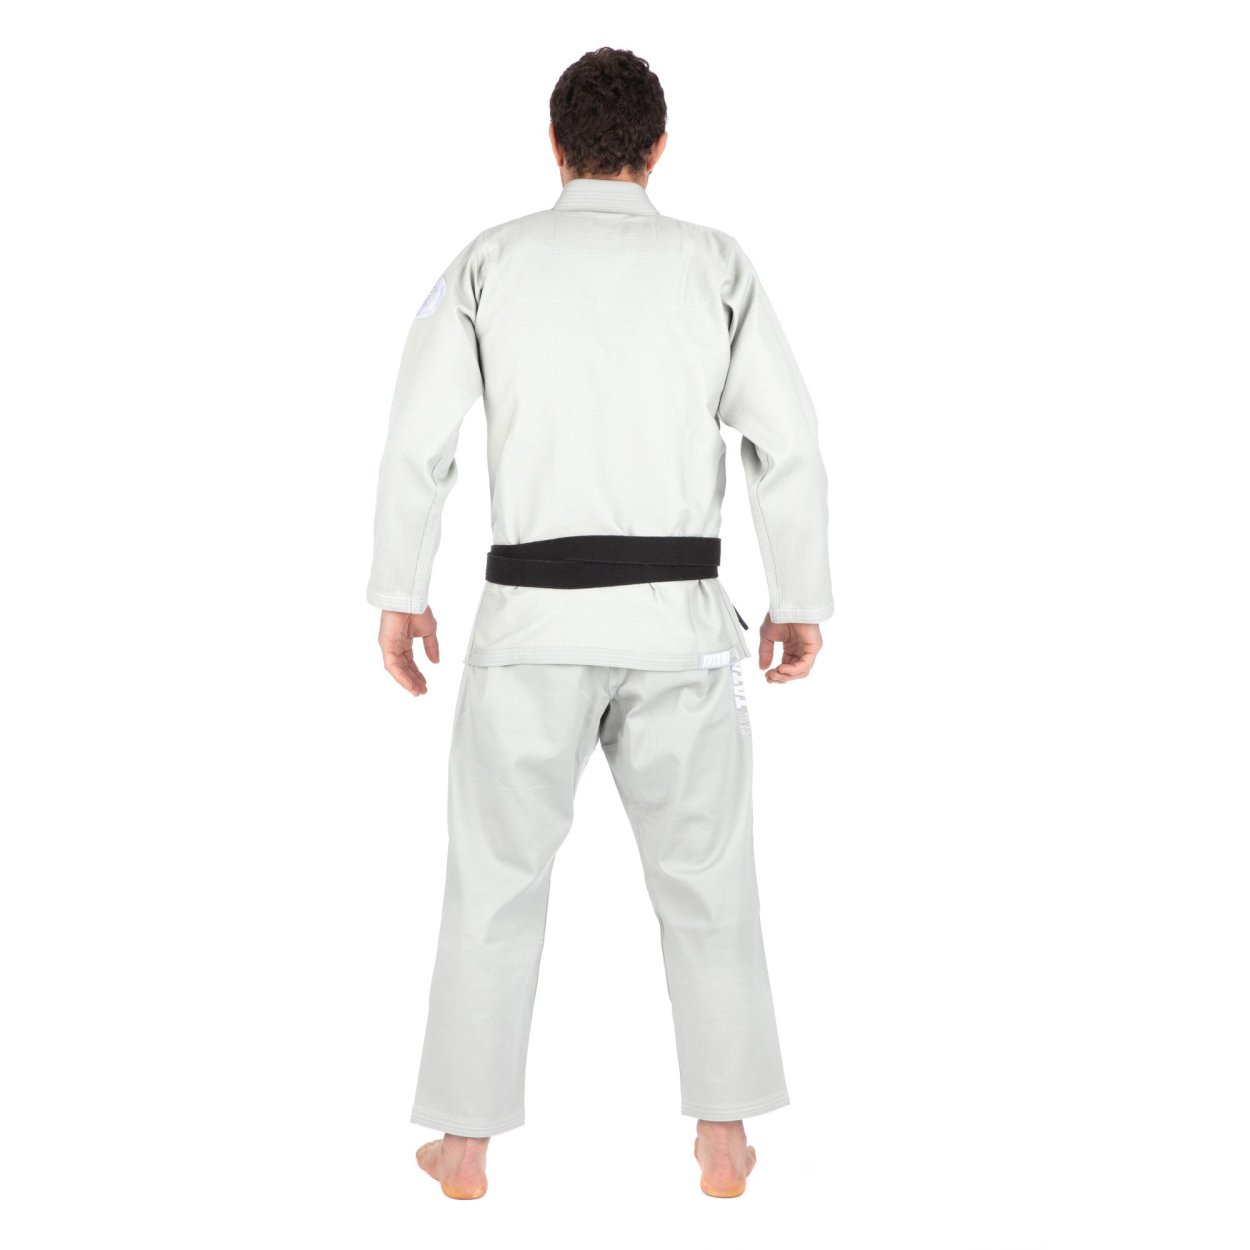 PLAYWELL MMA GRAPPLING Socks Black Tatami Mat Protection Foot Feet BJJ Jiu  Jitsu £22.99 - PicClick UK